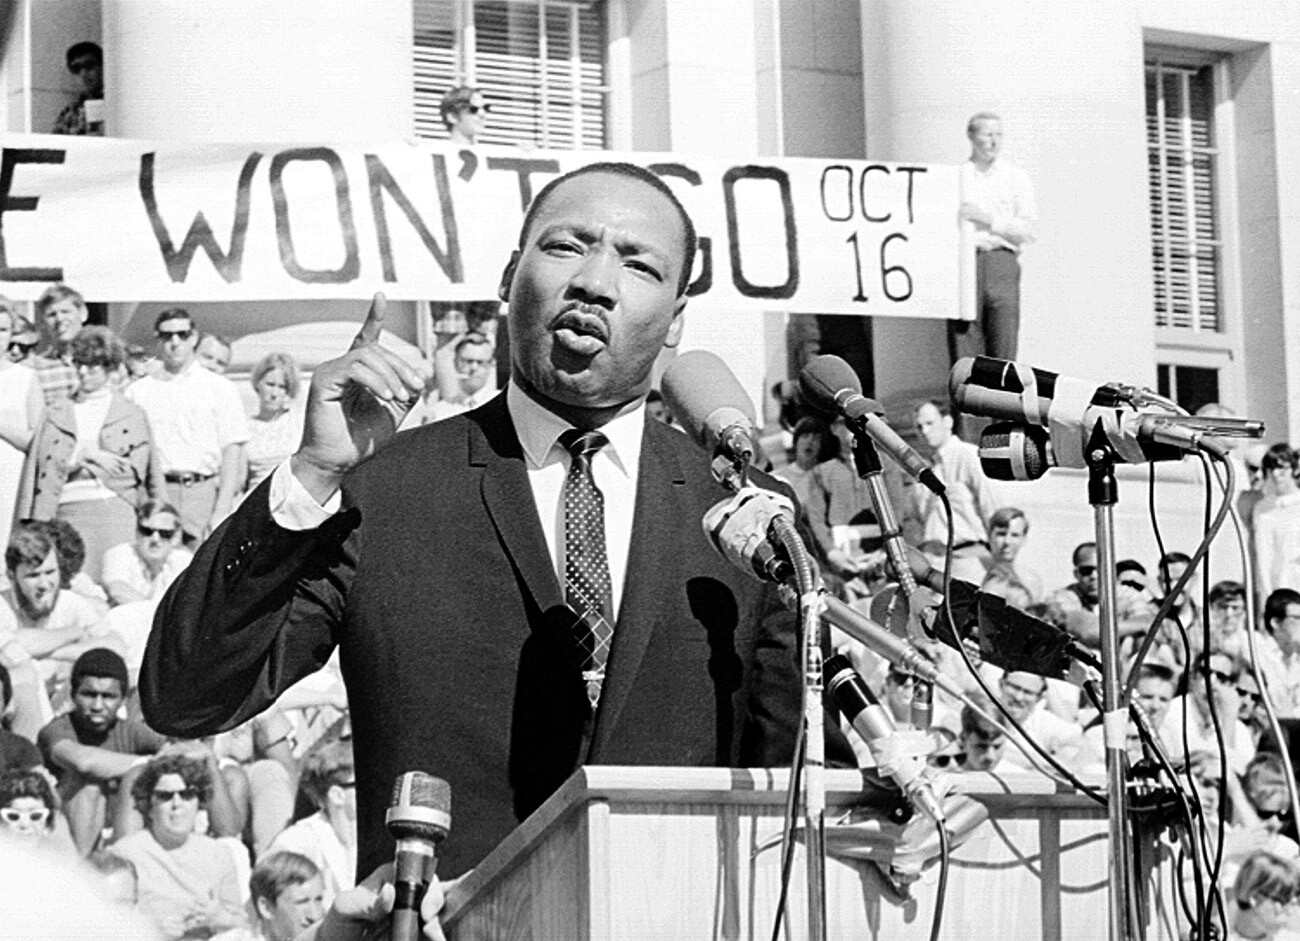 Borec za državljanske pravice, častiti Martin Luther King mlajši med govorom pred množico 17. maja 1967 (ko se je na Sproul Plaza na univerzi Berkeley v Berkeleyju v Kaliforniji zbralo približno 7000 ljudi) 